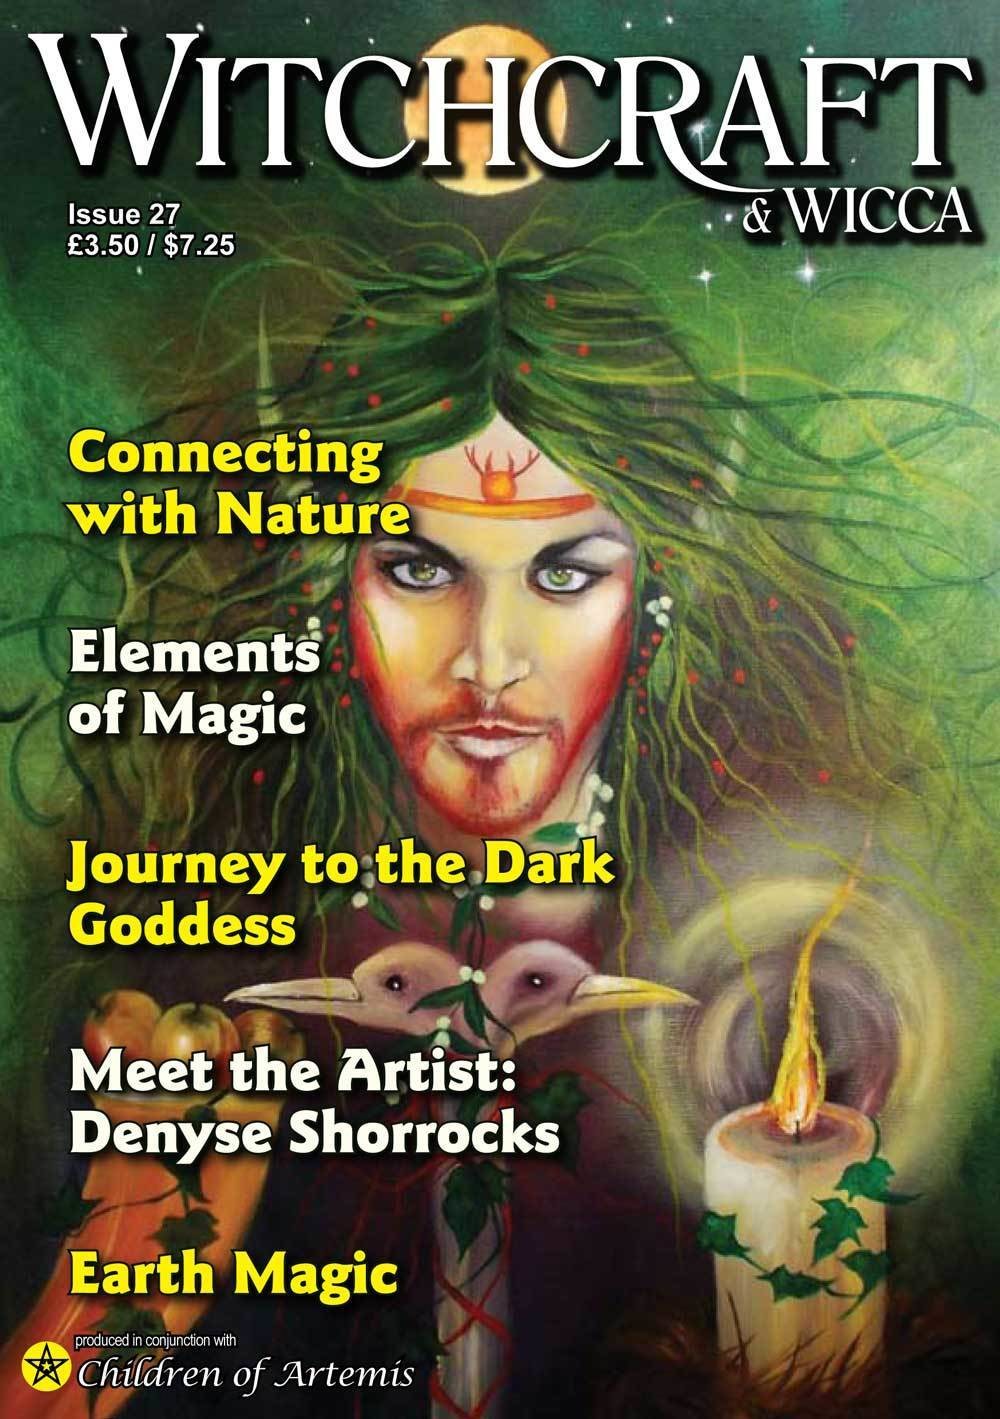 Witchcraft & Wicca Magazine Issue 27